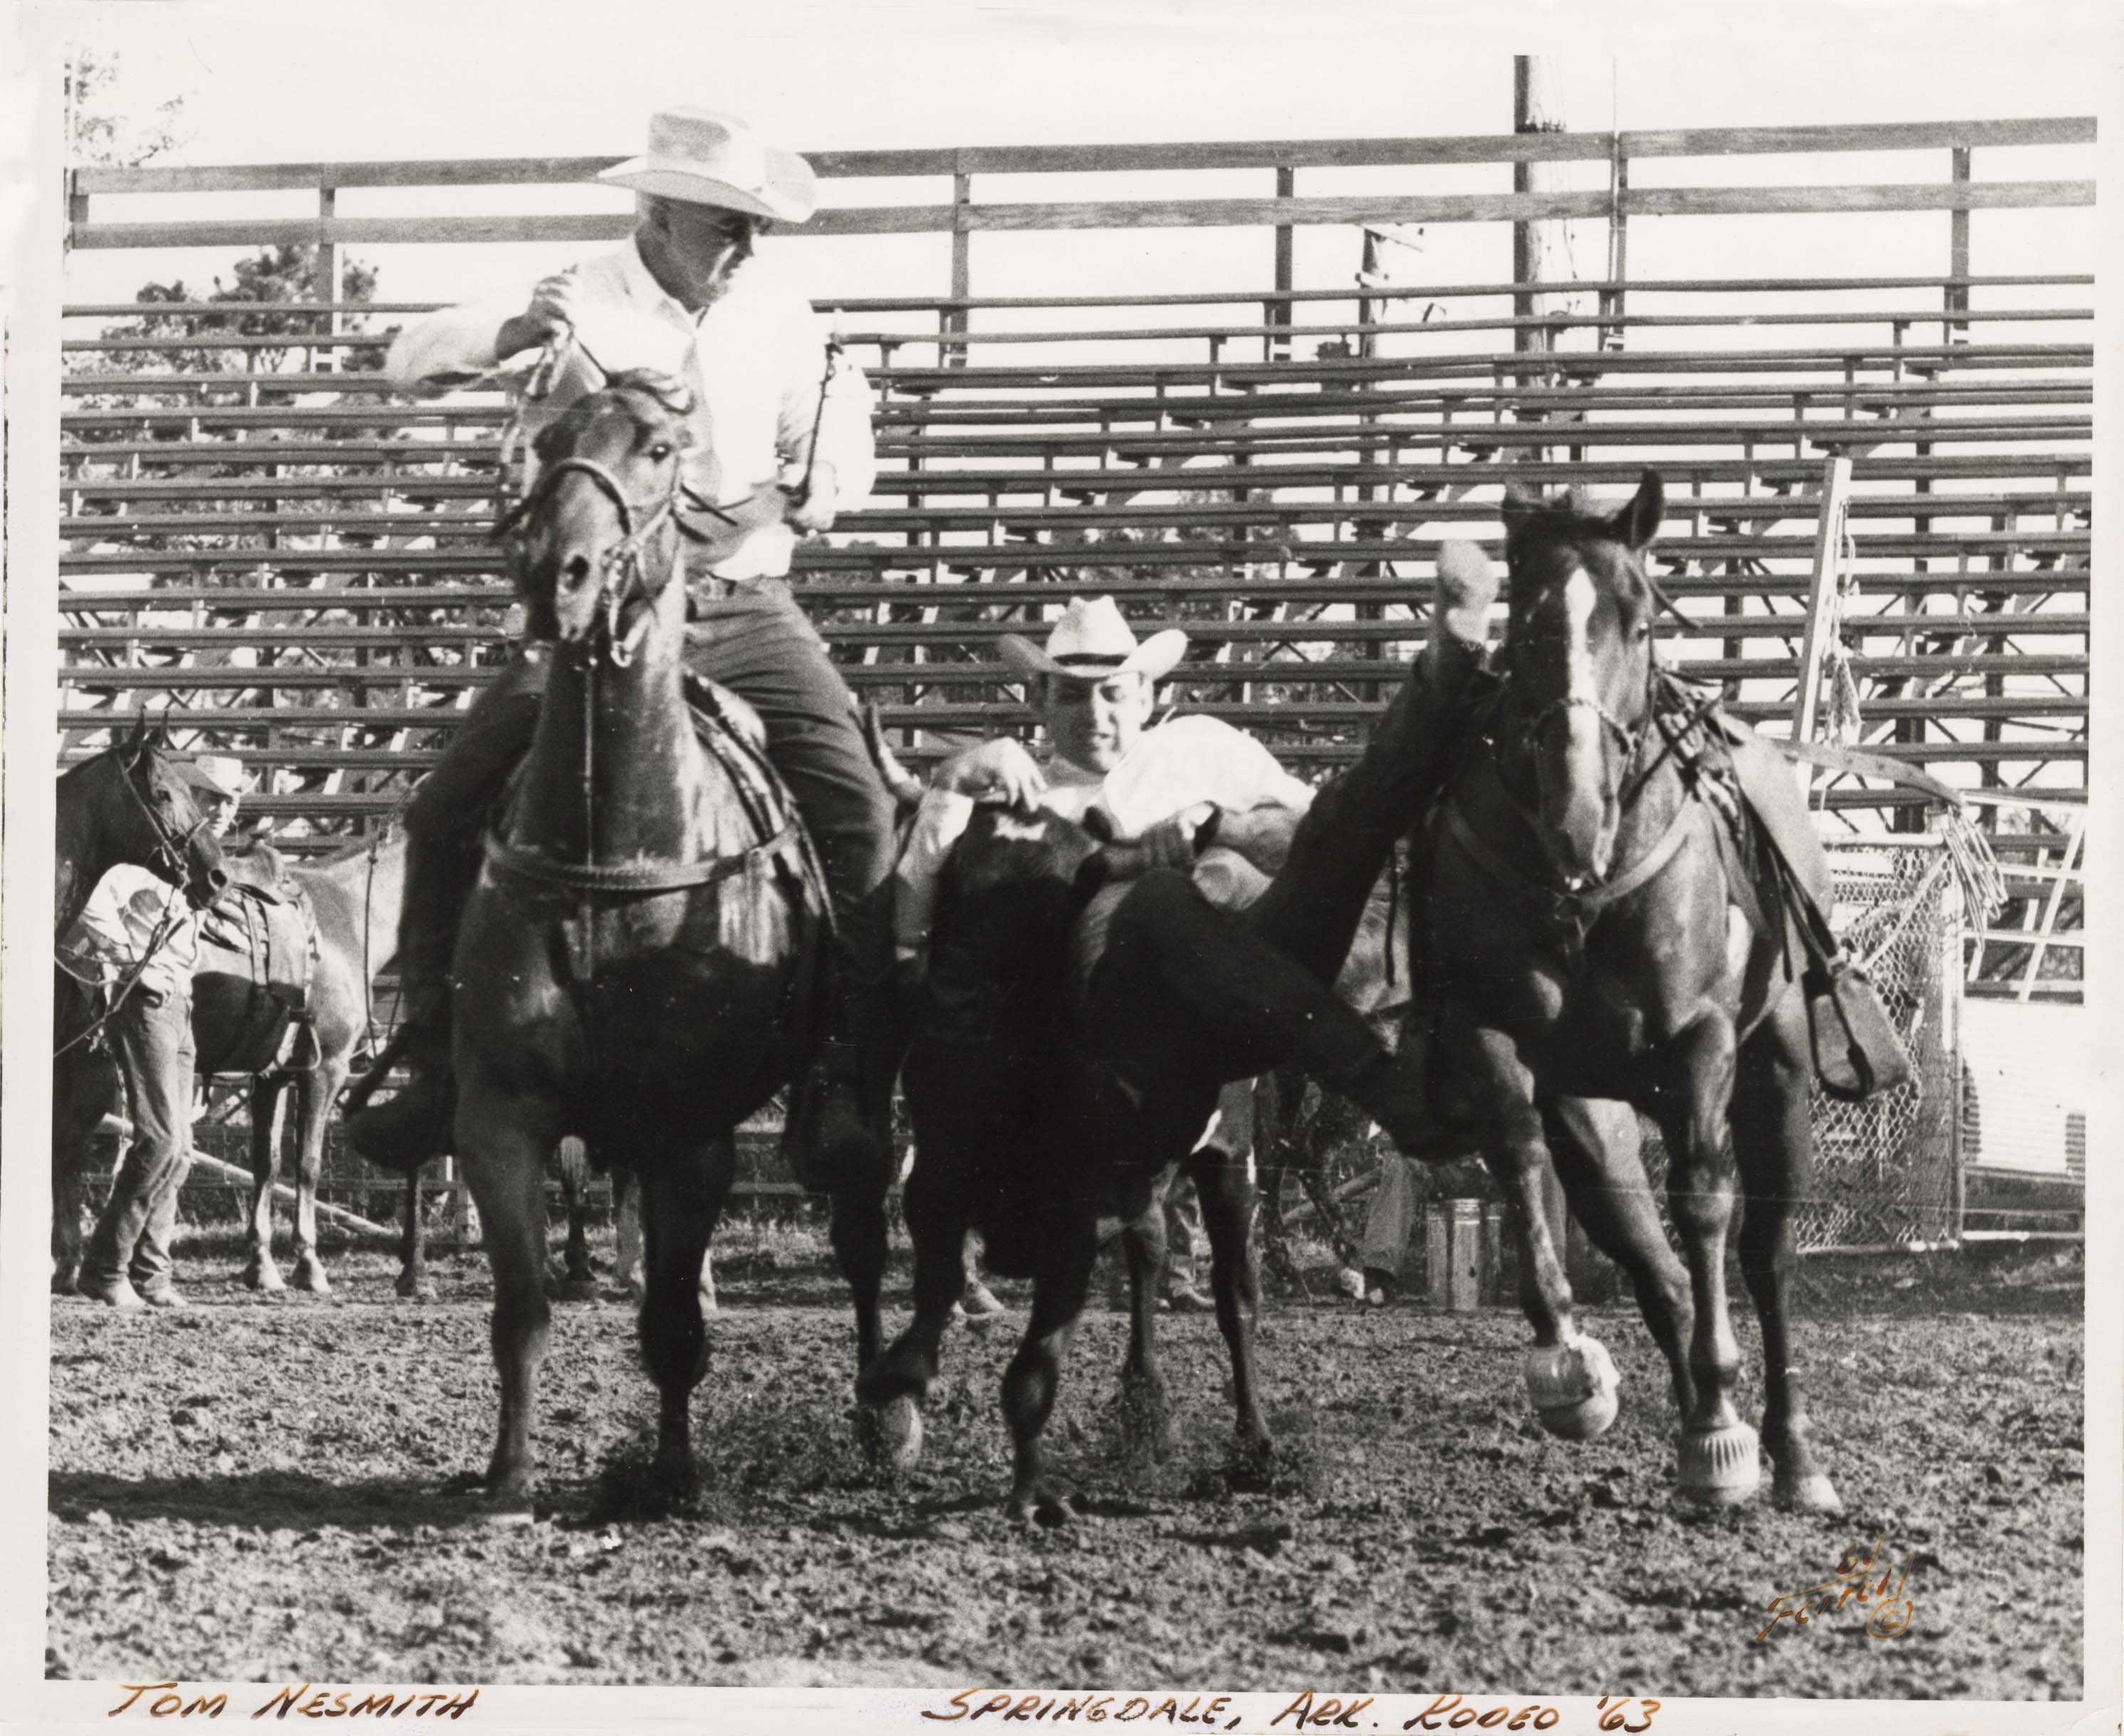 Tom Nesmith Springdale, Ark. Rodeo '63